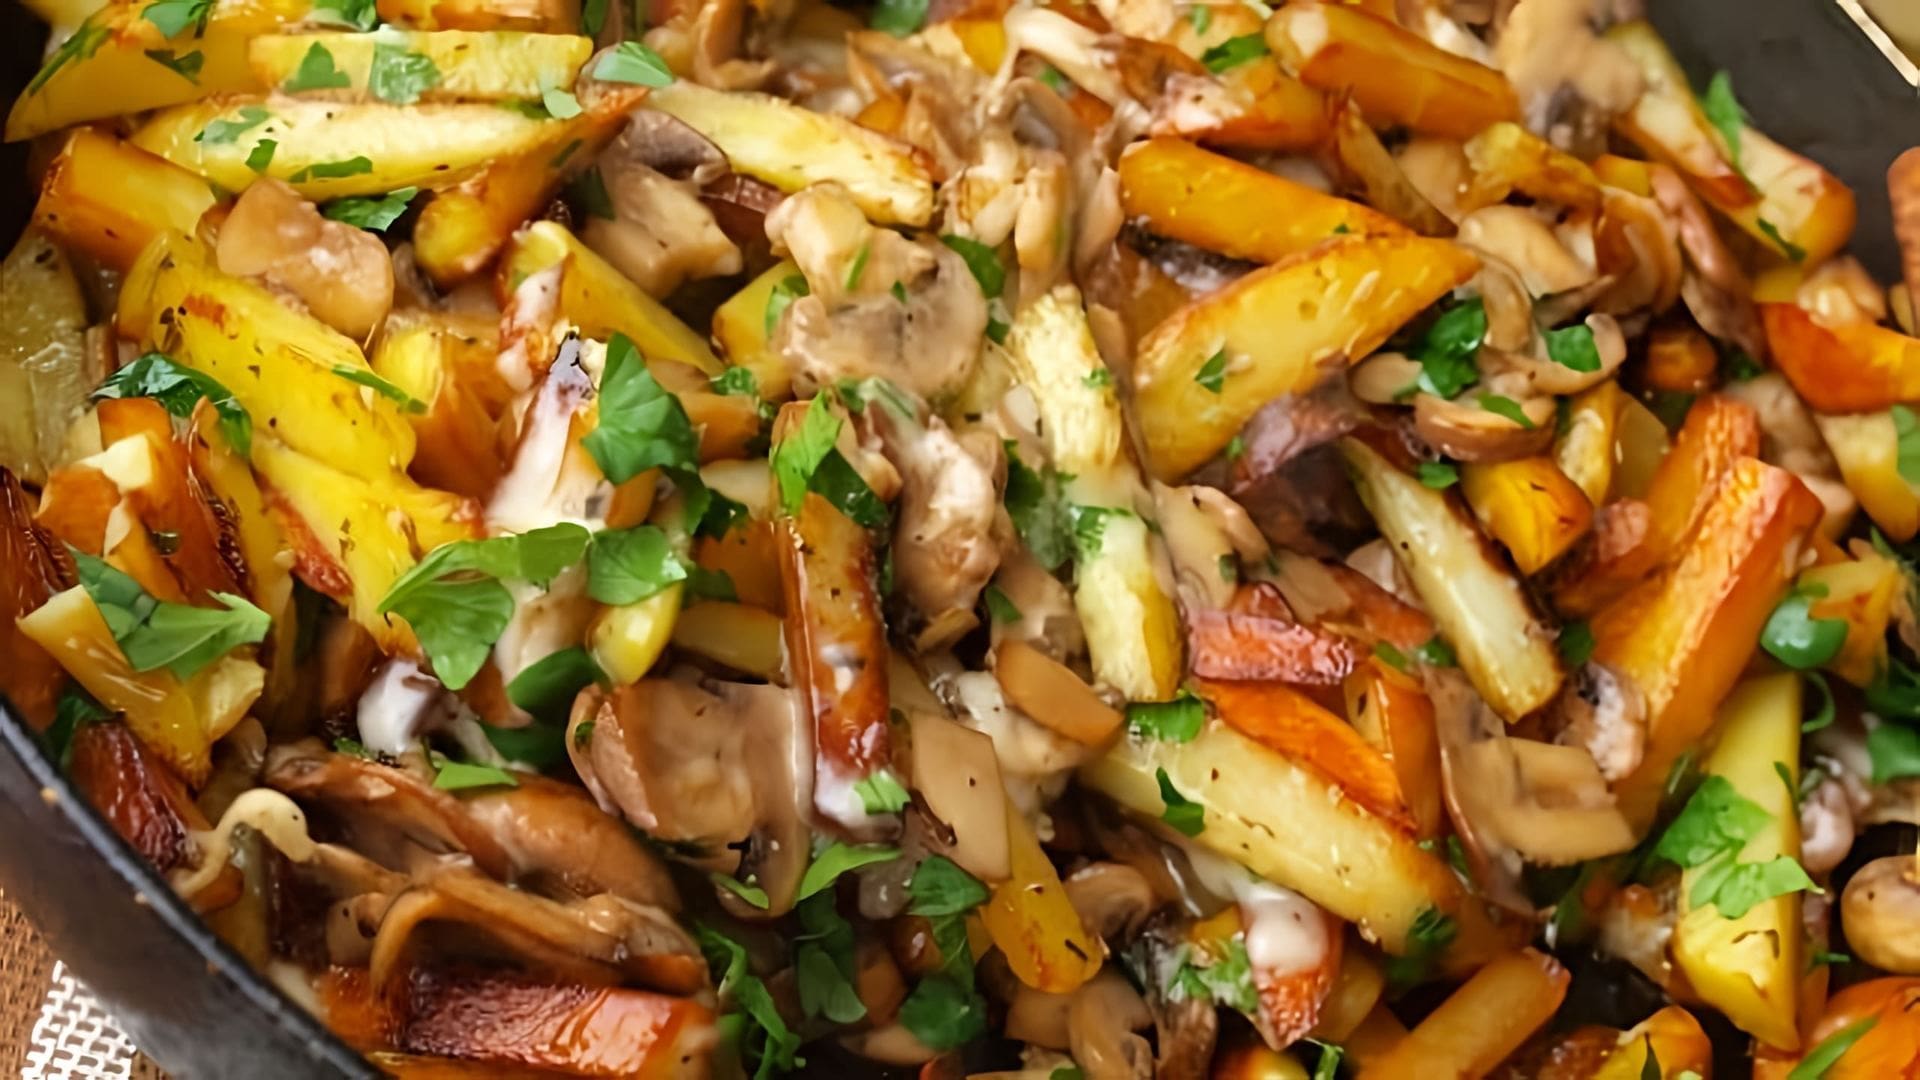 Жареная картошка с шампиньонами - это вкусное и простое блюдо, которое можно приготовить в домашних условиях